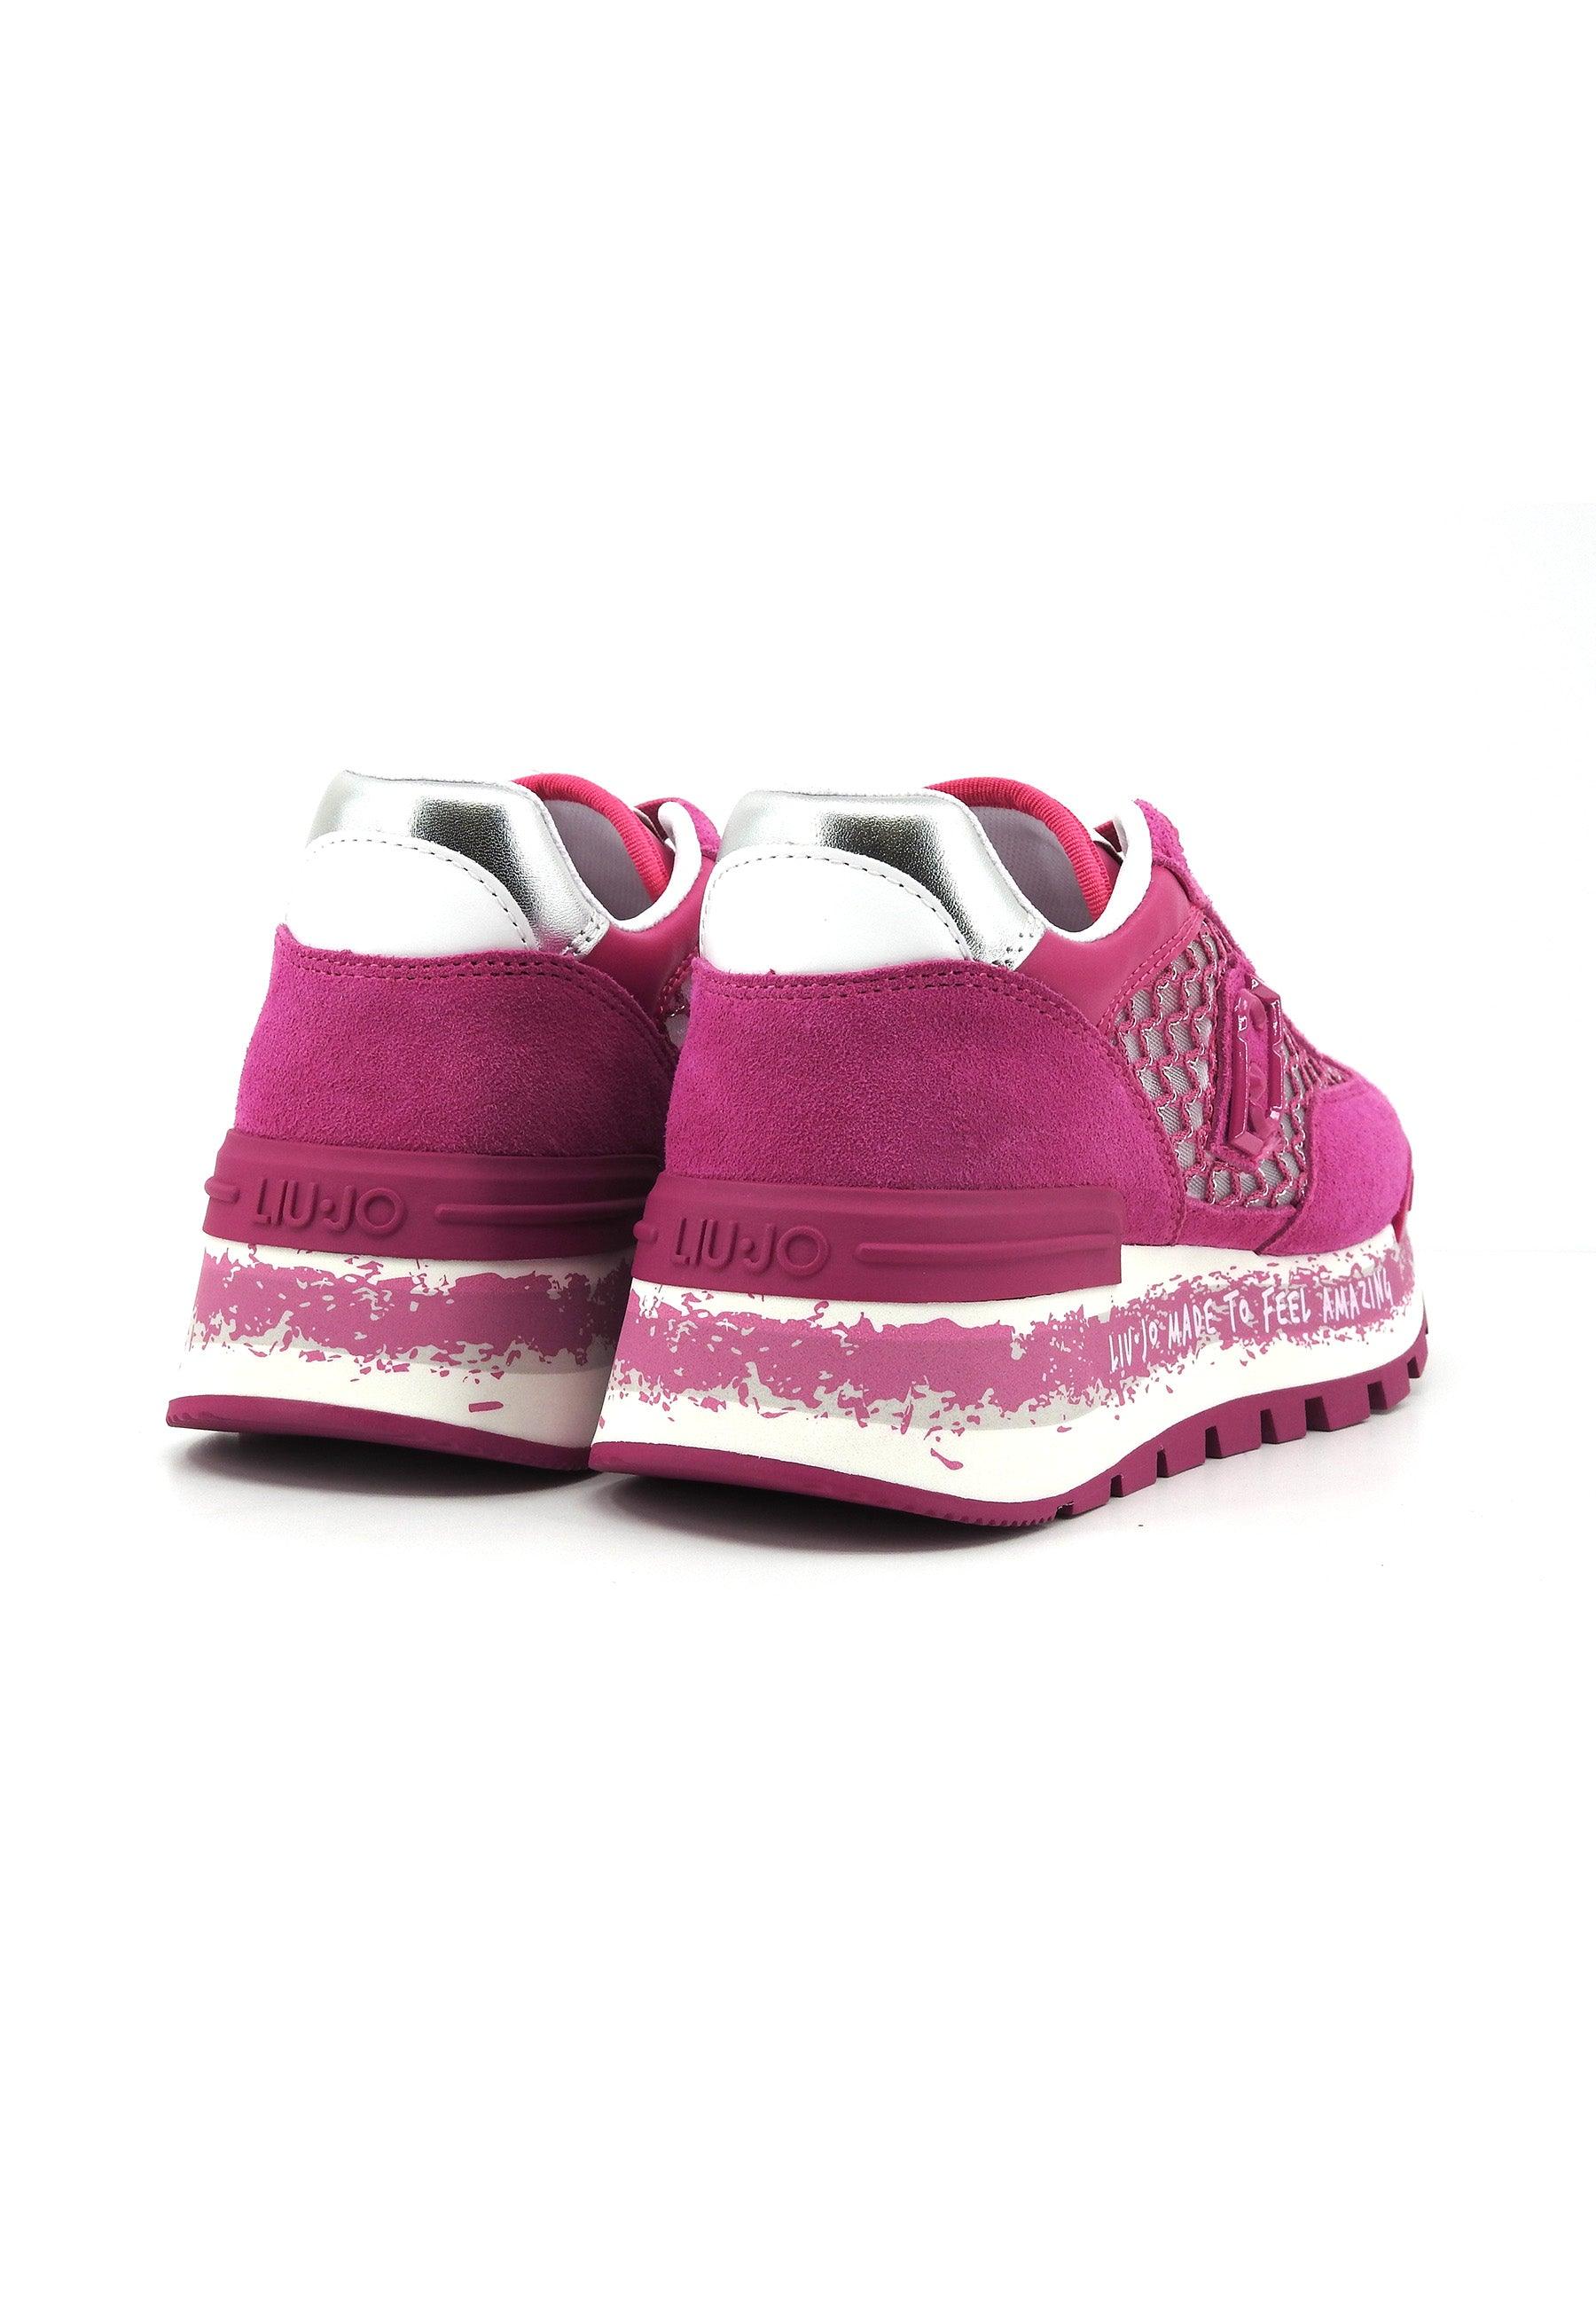 LIU JO Amazing 23 Sneaker Donna Pink Silver BA4001PX303 - Sandrini Calzature e Abbigliamento